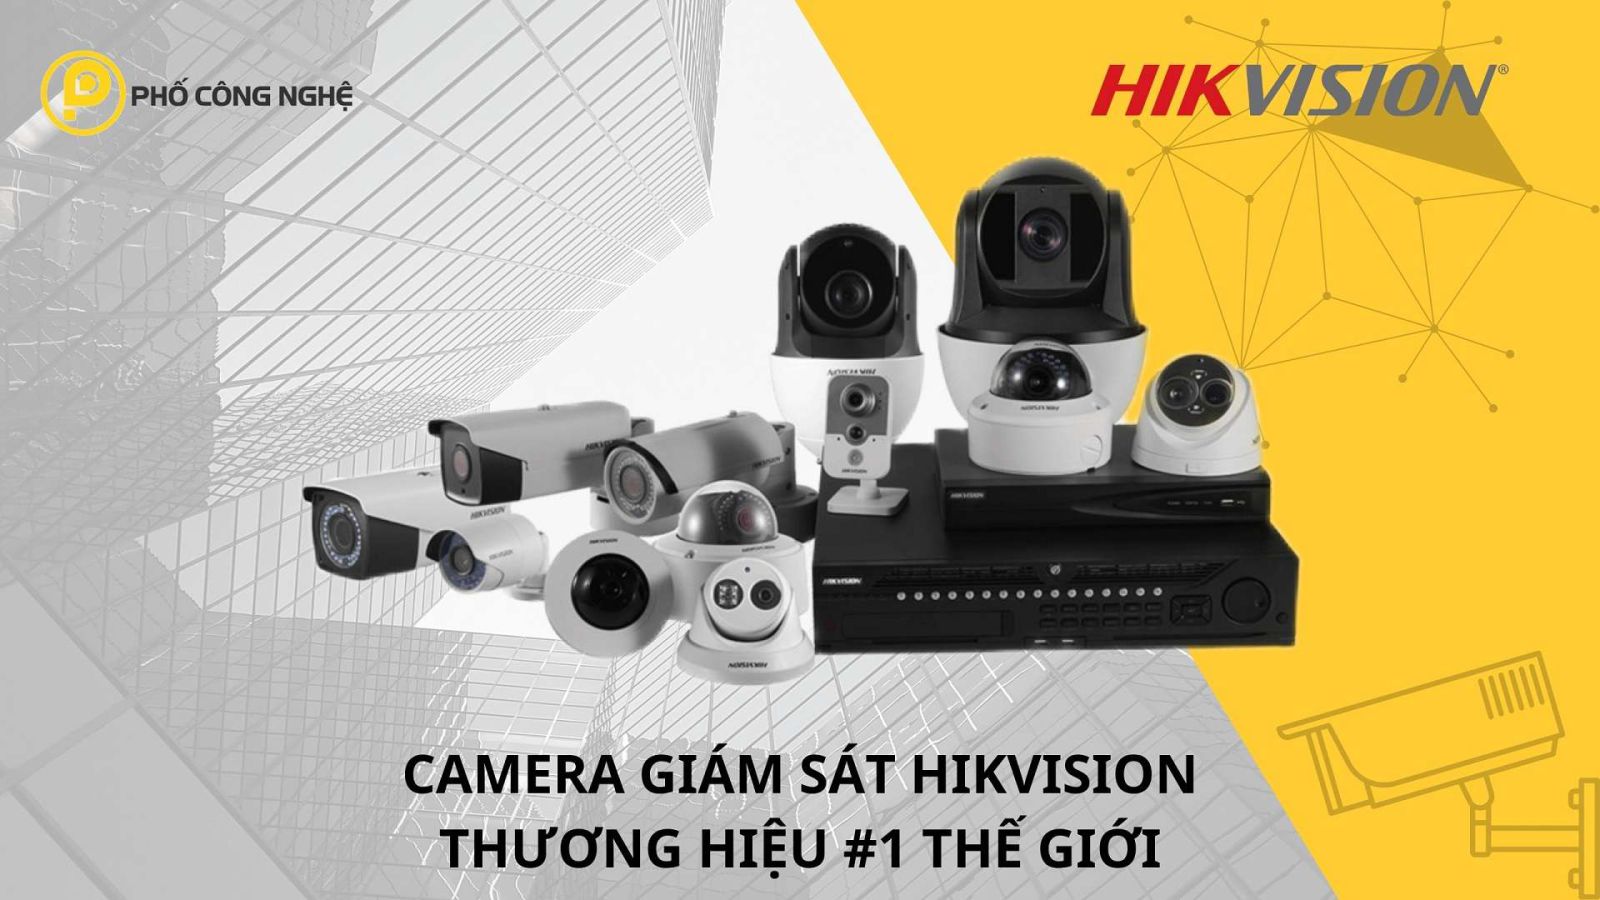 Camera giám sát Hikvision chính hãng 100%, giá rẻ tại Phố Công Nghệ